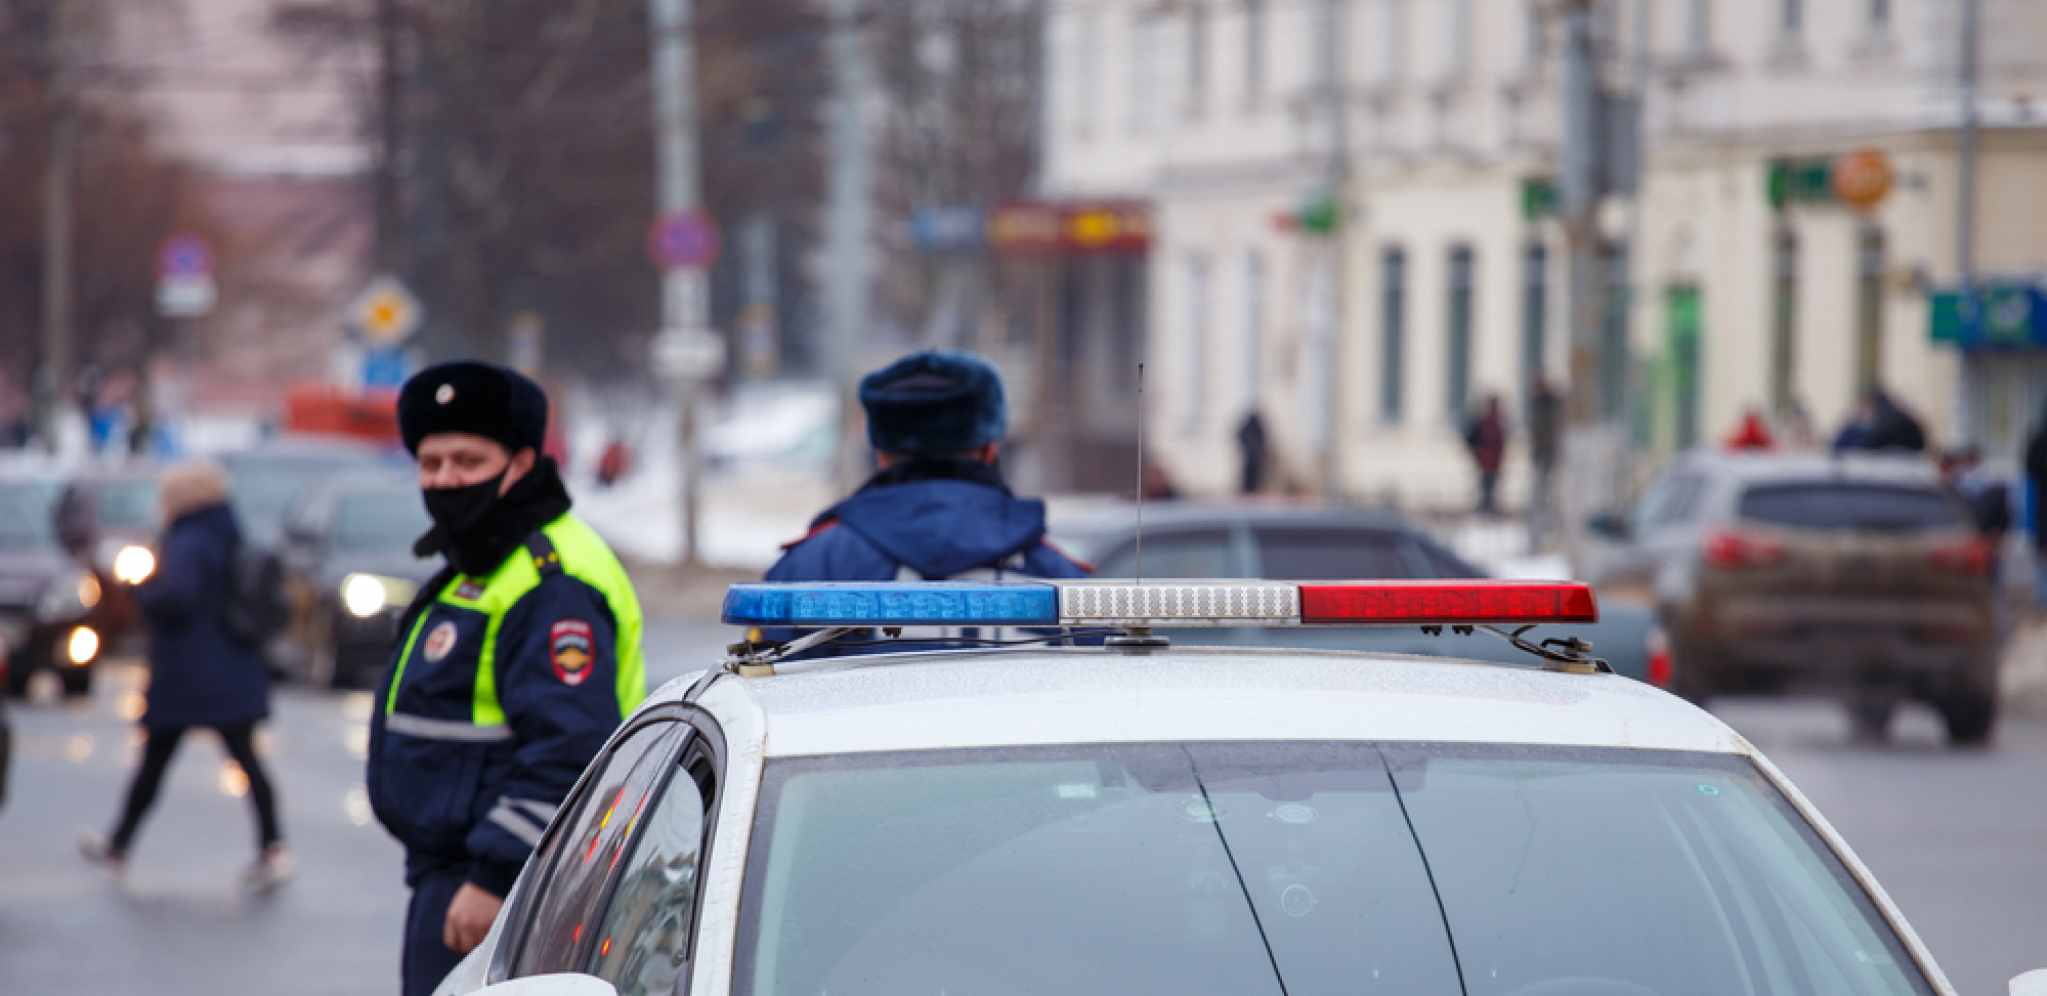 SLUČAJNO UBILA MUŽA NOŽEM? Policajci nisu mogli da veruju kakvo objašnjenje slušaju posle bizarnog ubistva u Moskvi